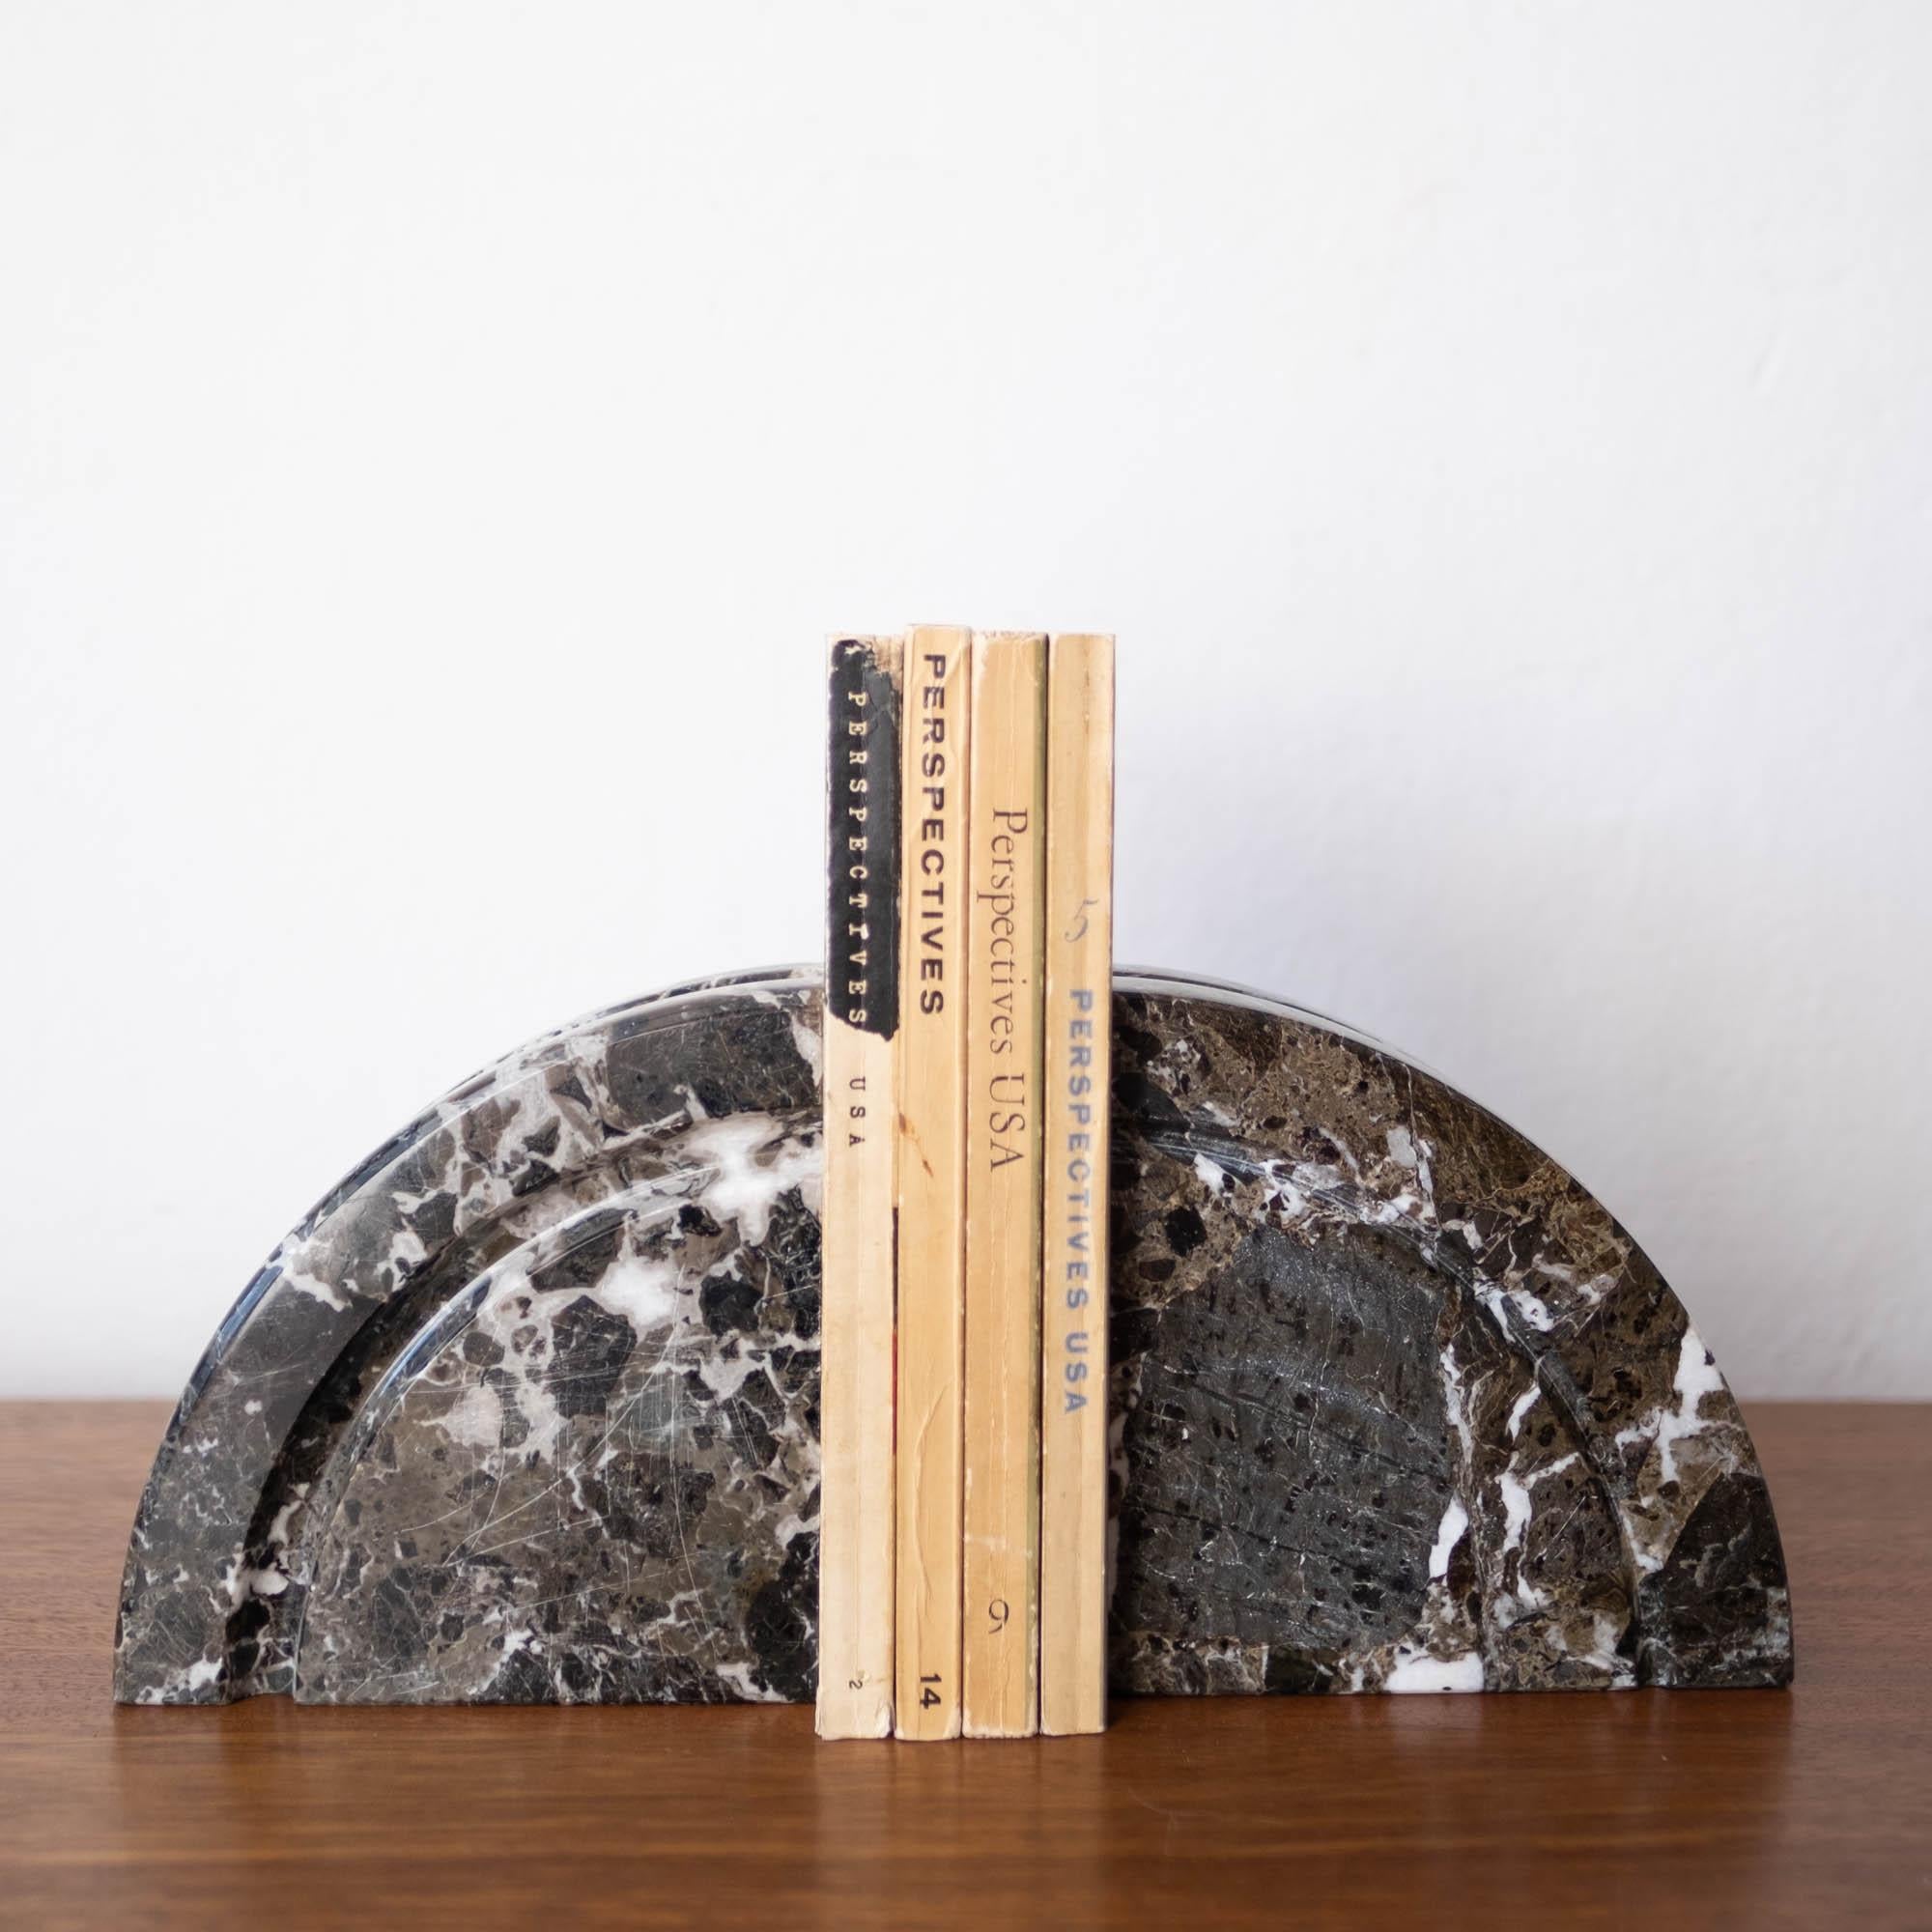 Schönes Paar italienischer Marmor-Buchstützen, circa 1970er Jahre. Nach dem Vorbild von Sergio Asti. Der Stein ist wunderschön geädert und in hervorragendem Zustand. Die fast identischen Buchstützen sind skulptural und funktional.